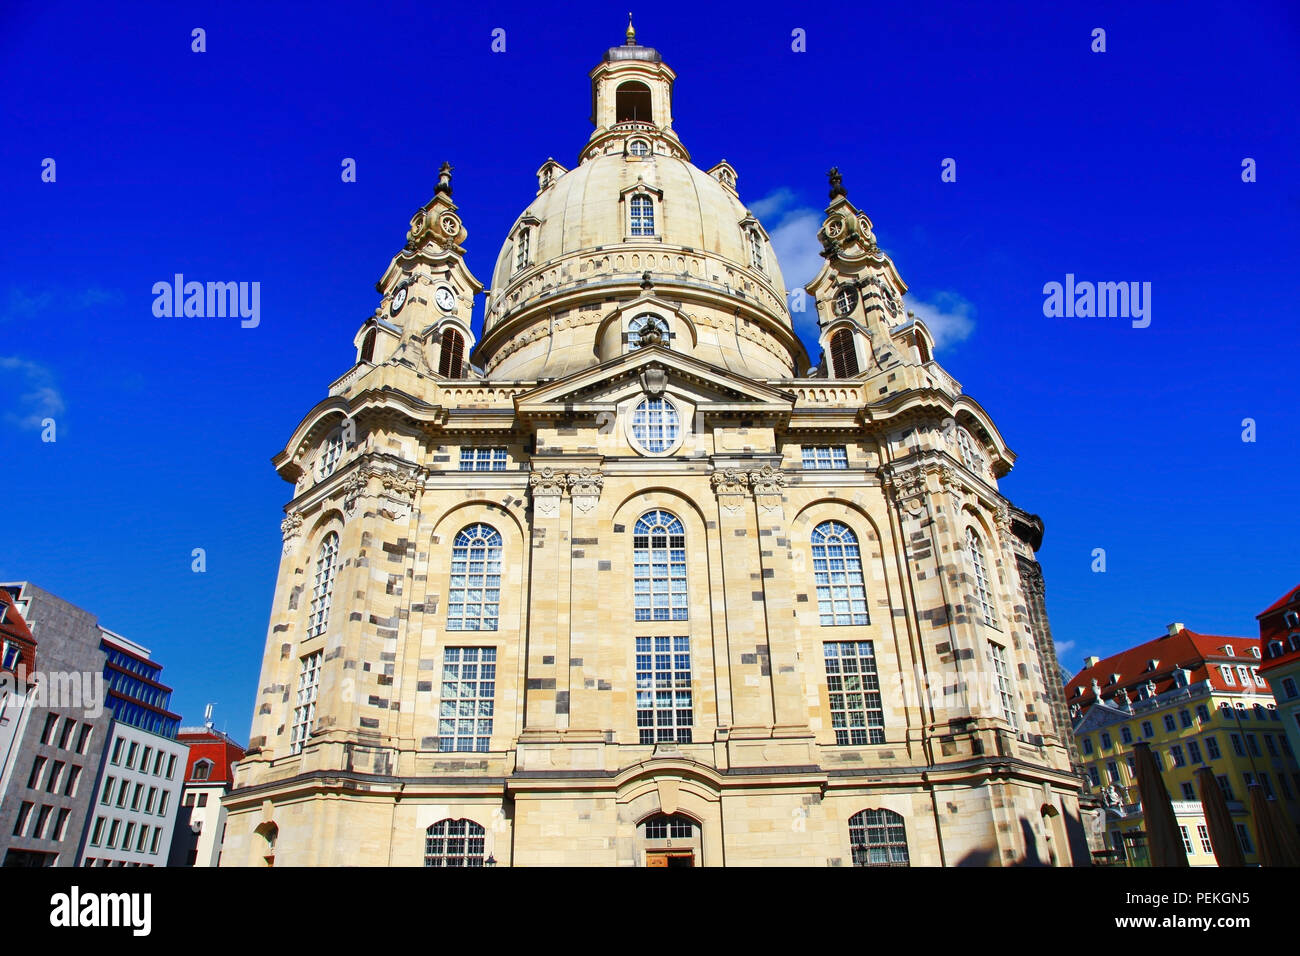 La Cathédrale impressionnante vieille ville de Dresde, en Allemagne. Banque D'Images